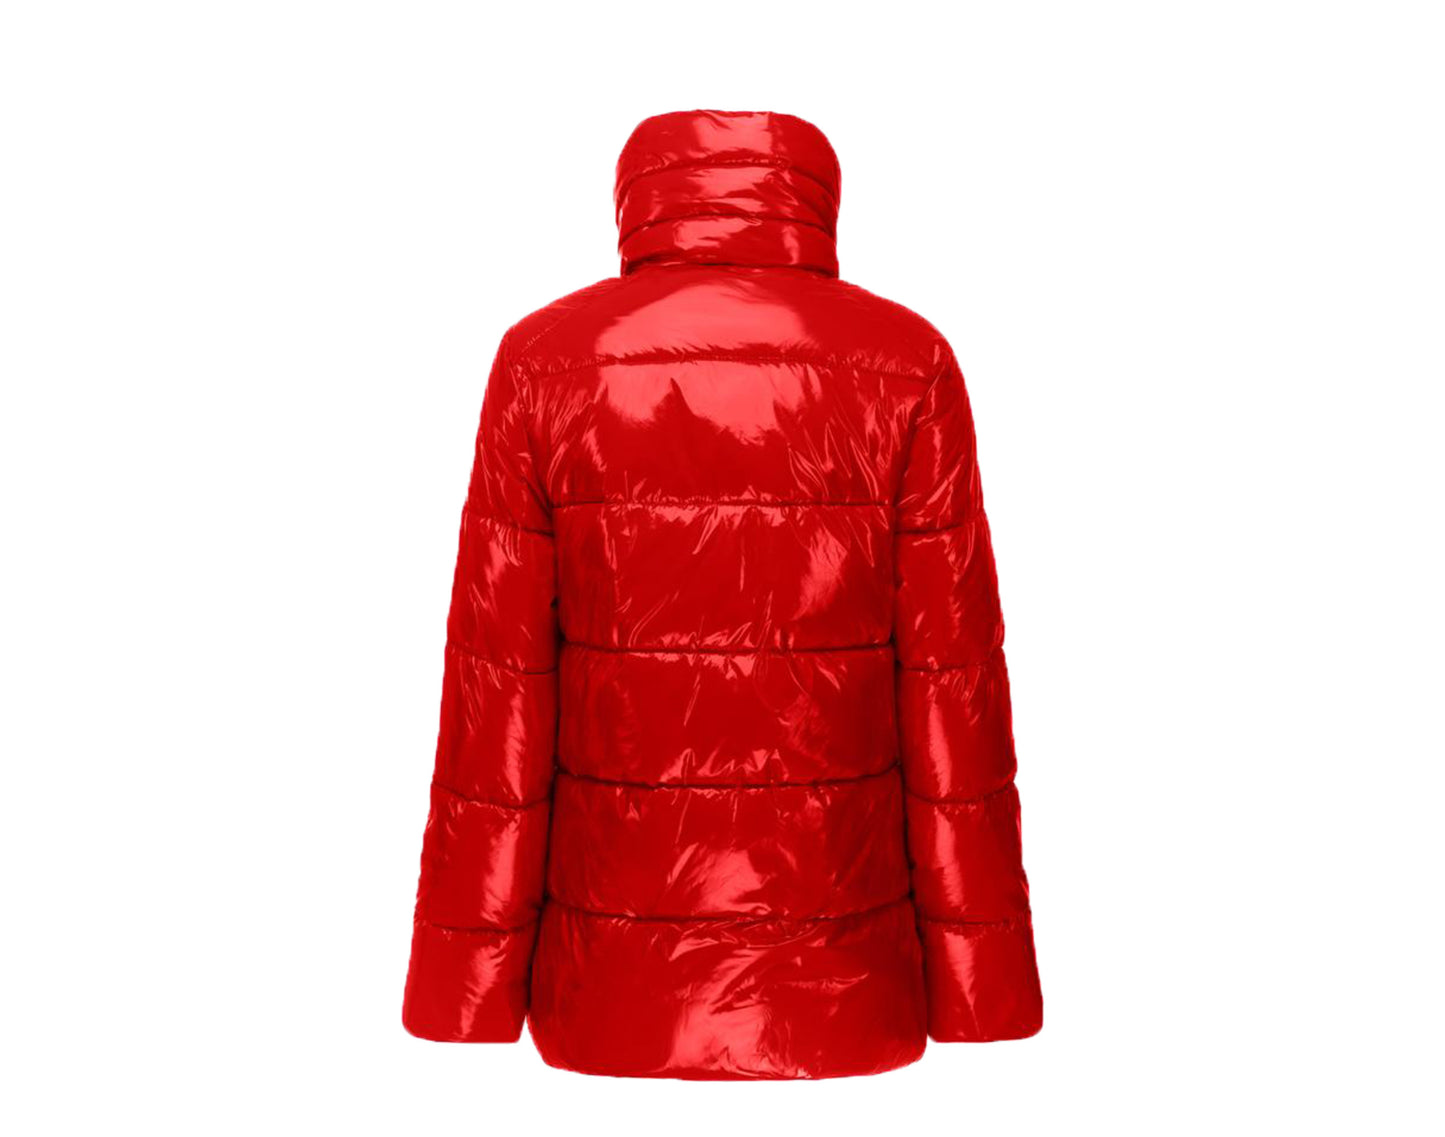 Invicta Leah Contemporary Stylish Coat Women's Jacket